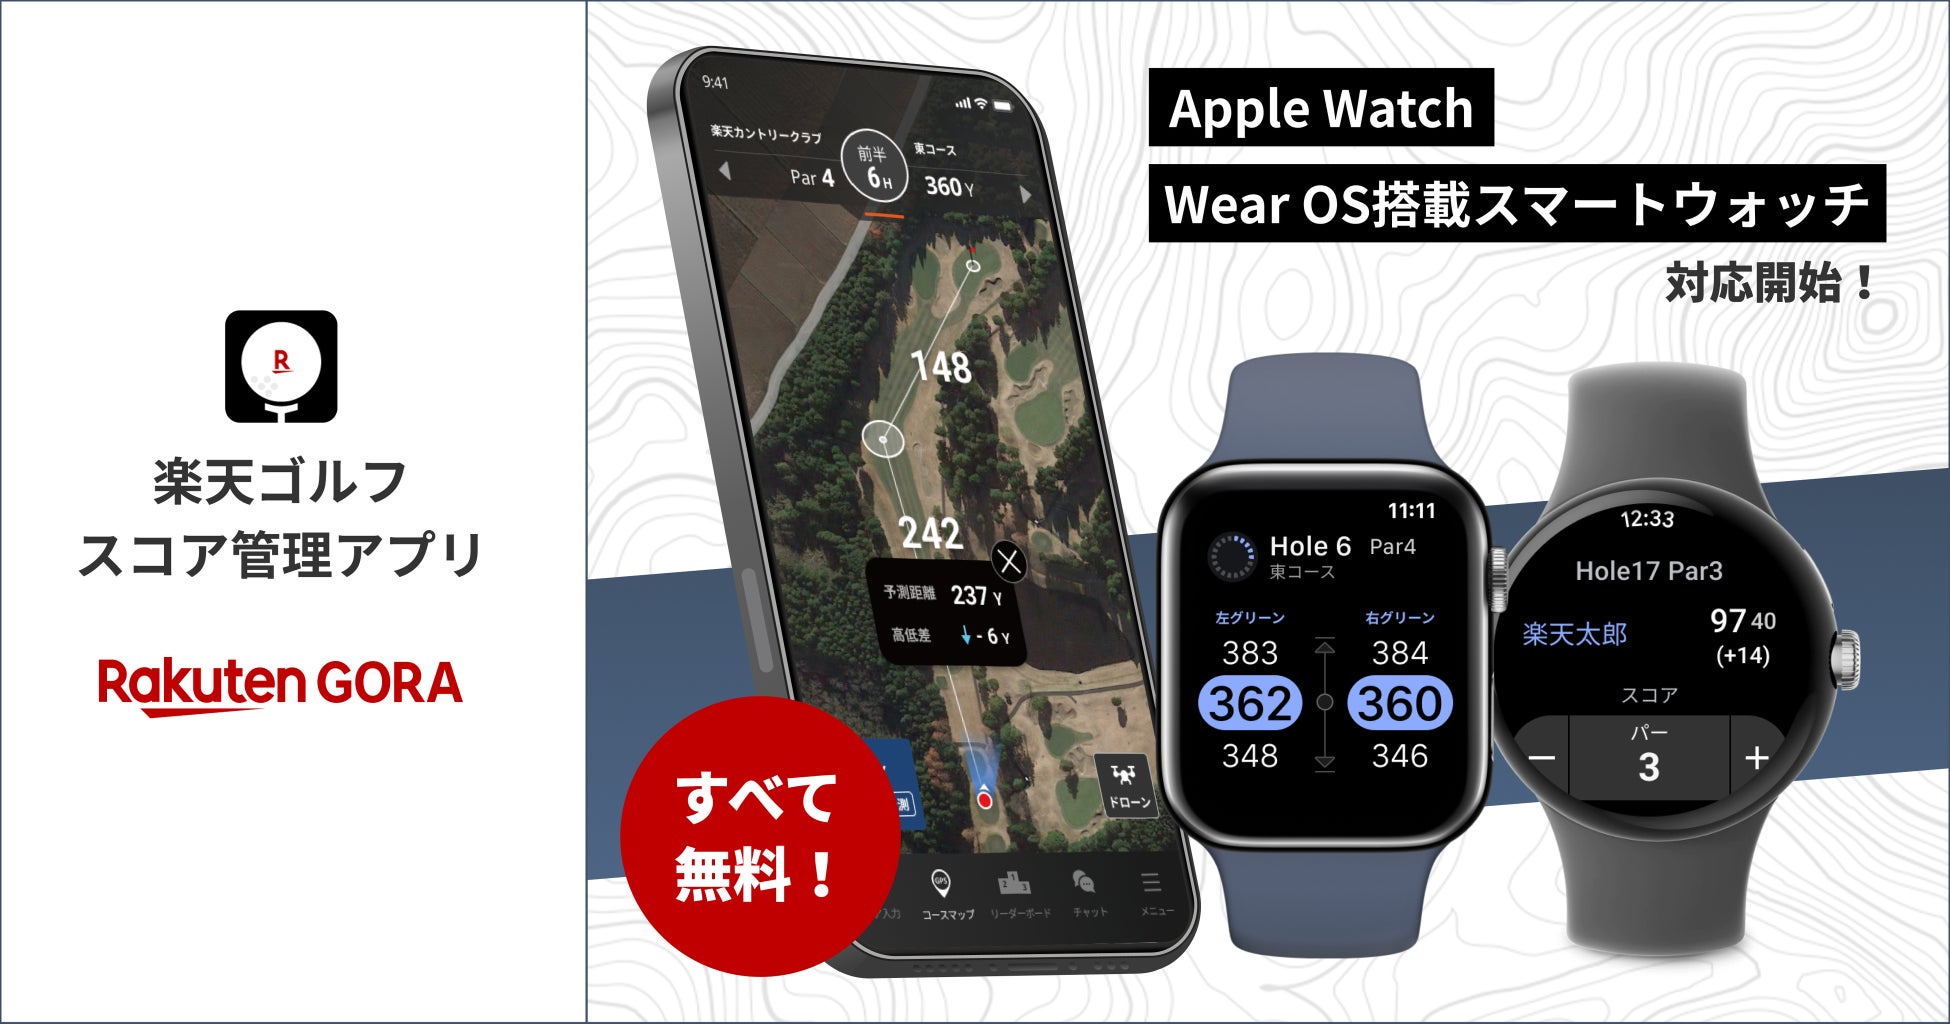 「楽天GORA」の「楽天ゴルフスコア管理アプリ」、Apple WatchとAndroid™対応のスマートウォッチで利用可能に